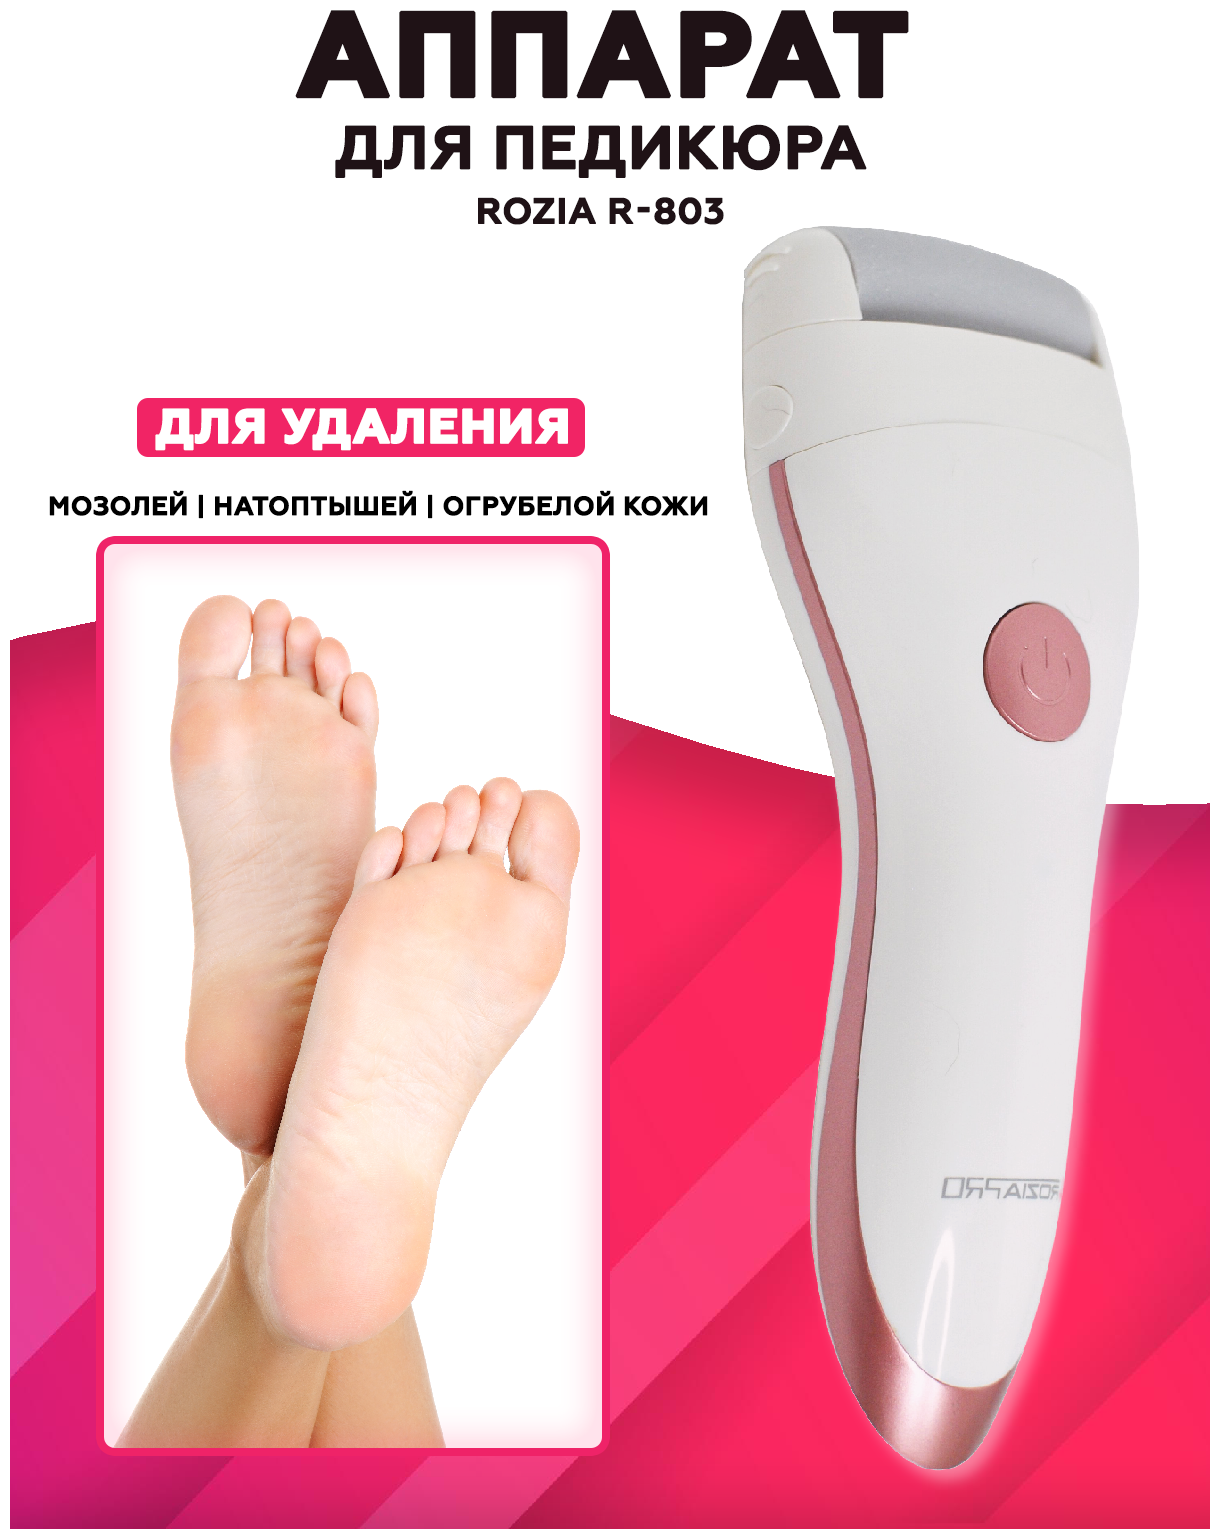 Электрическая пилка для ног Rozia/аппарат для педикюра/пемза для ног/пилка для пяток/щетка для стоп